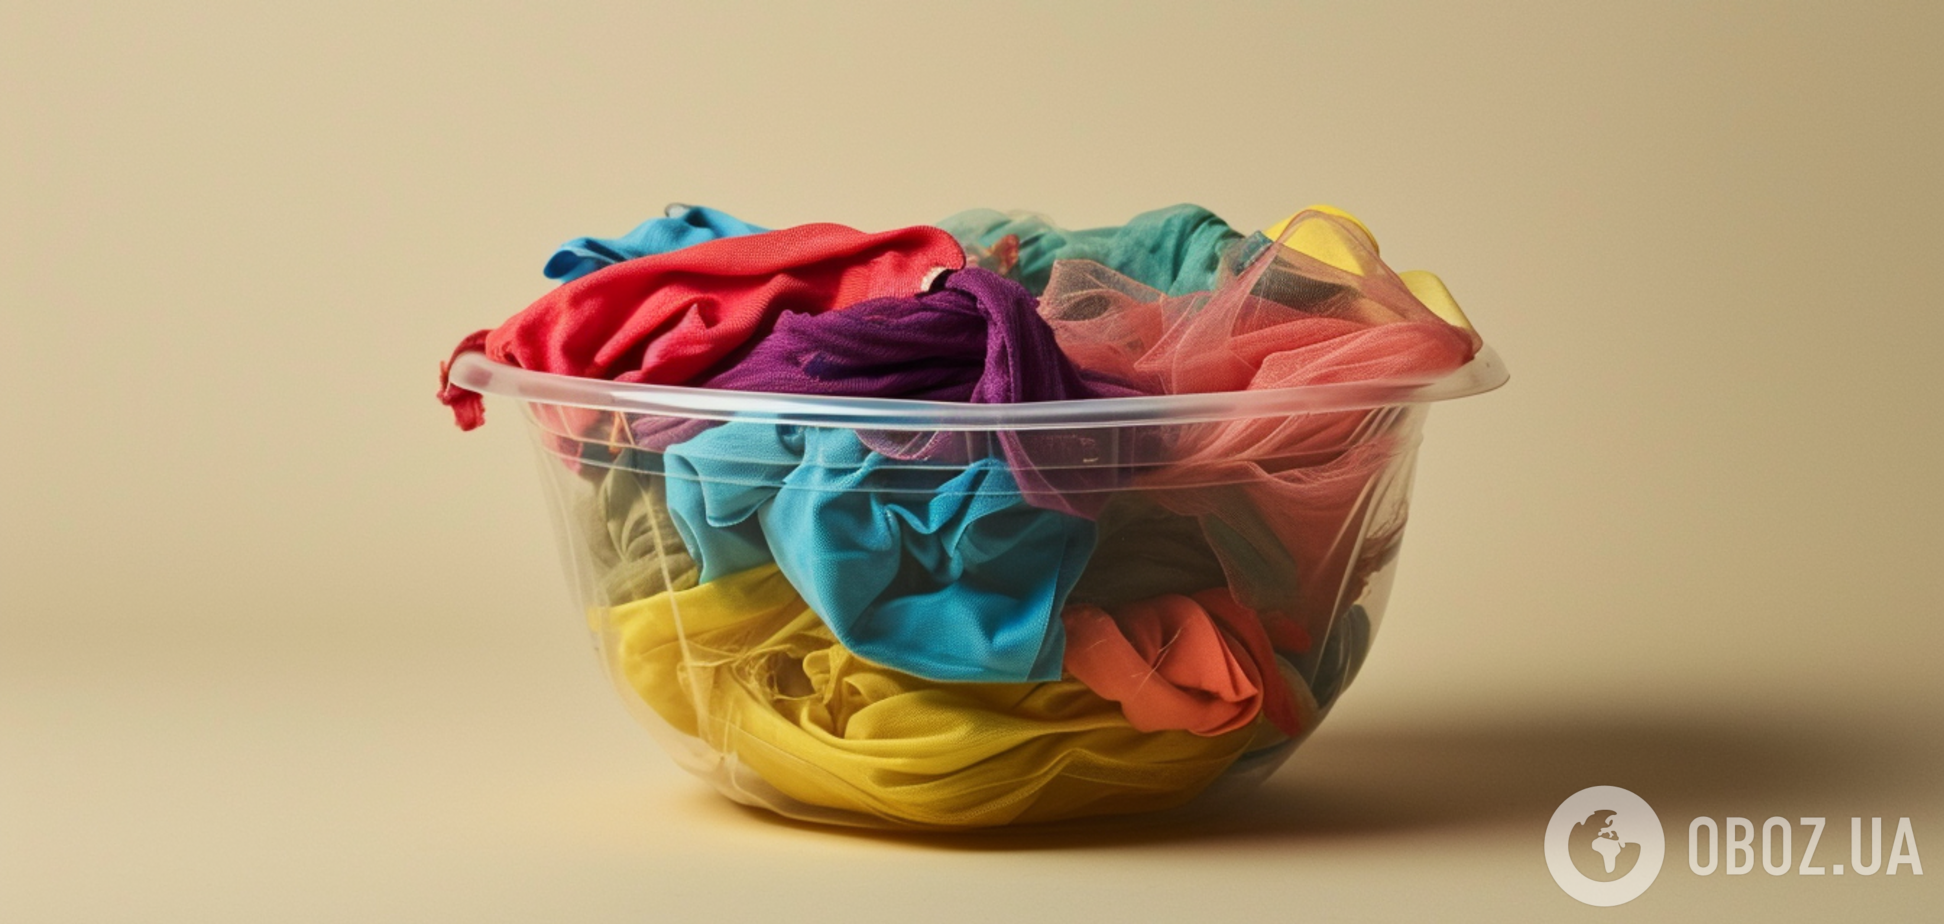 Как правильно сортировать одежду по цвету при стирке: знают далеко не все